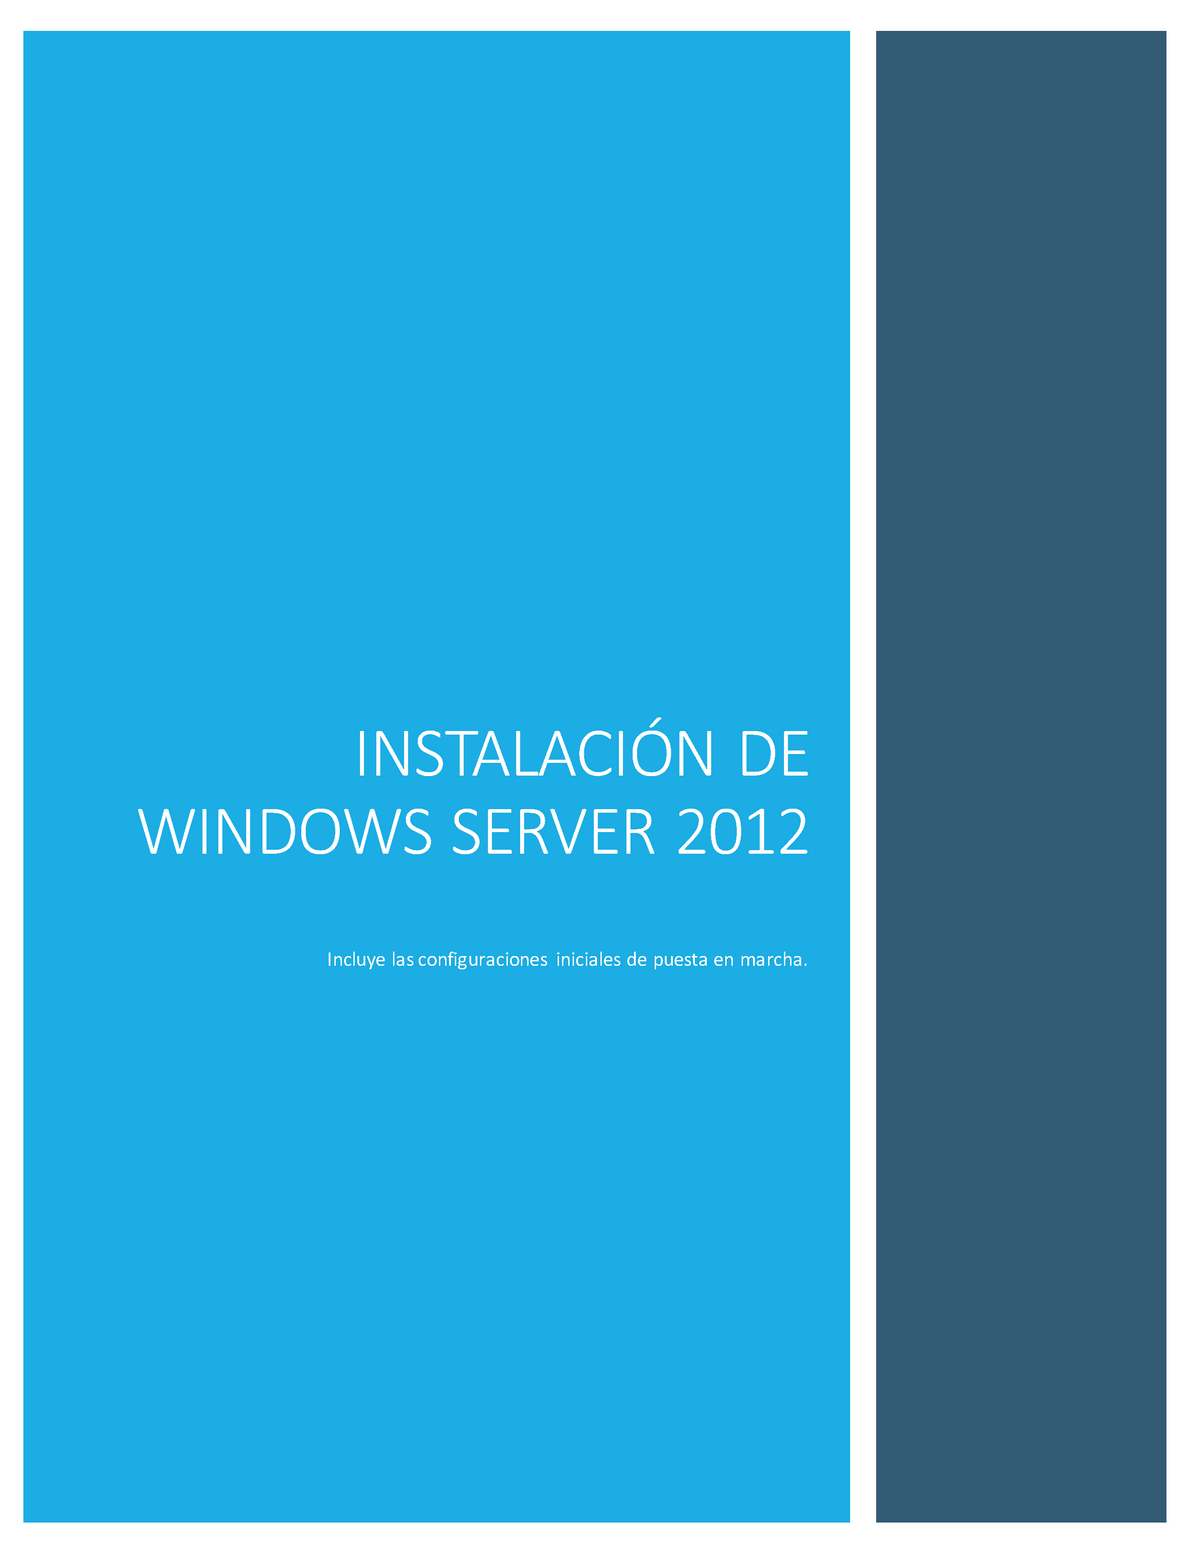 Instalación De Windows Server 2012 De Windows Server 2012 Incluye Las Configuraciones 3220